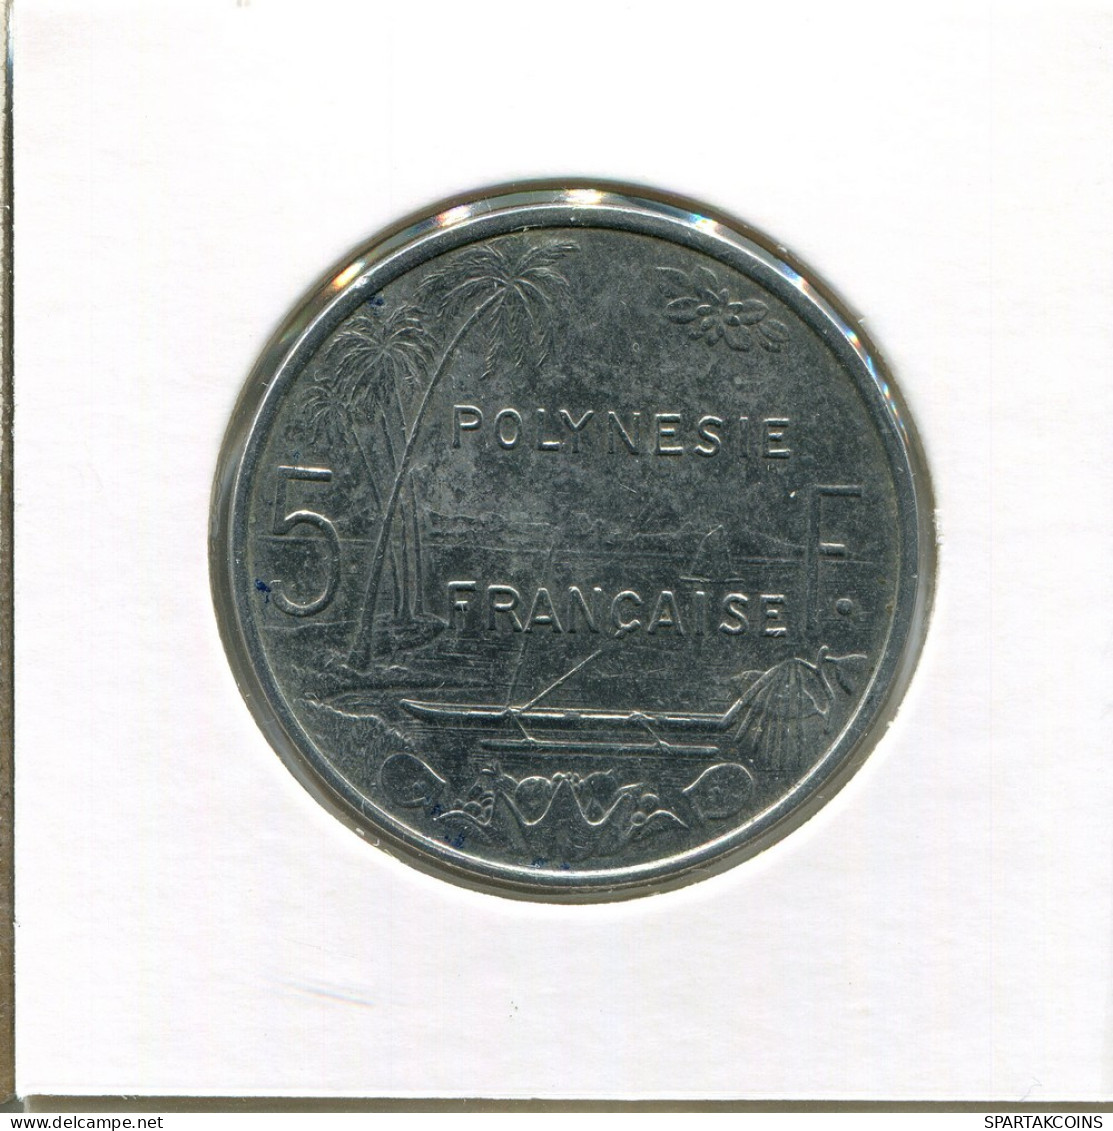 5 FRANCS 2003 Französisch POLYNESIA Koloniale Münze #AM507.D - Frans-Polynesië